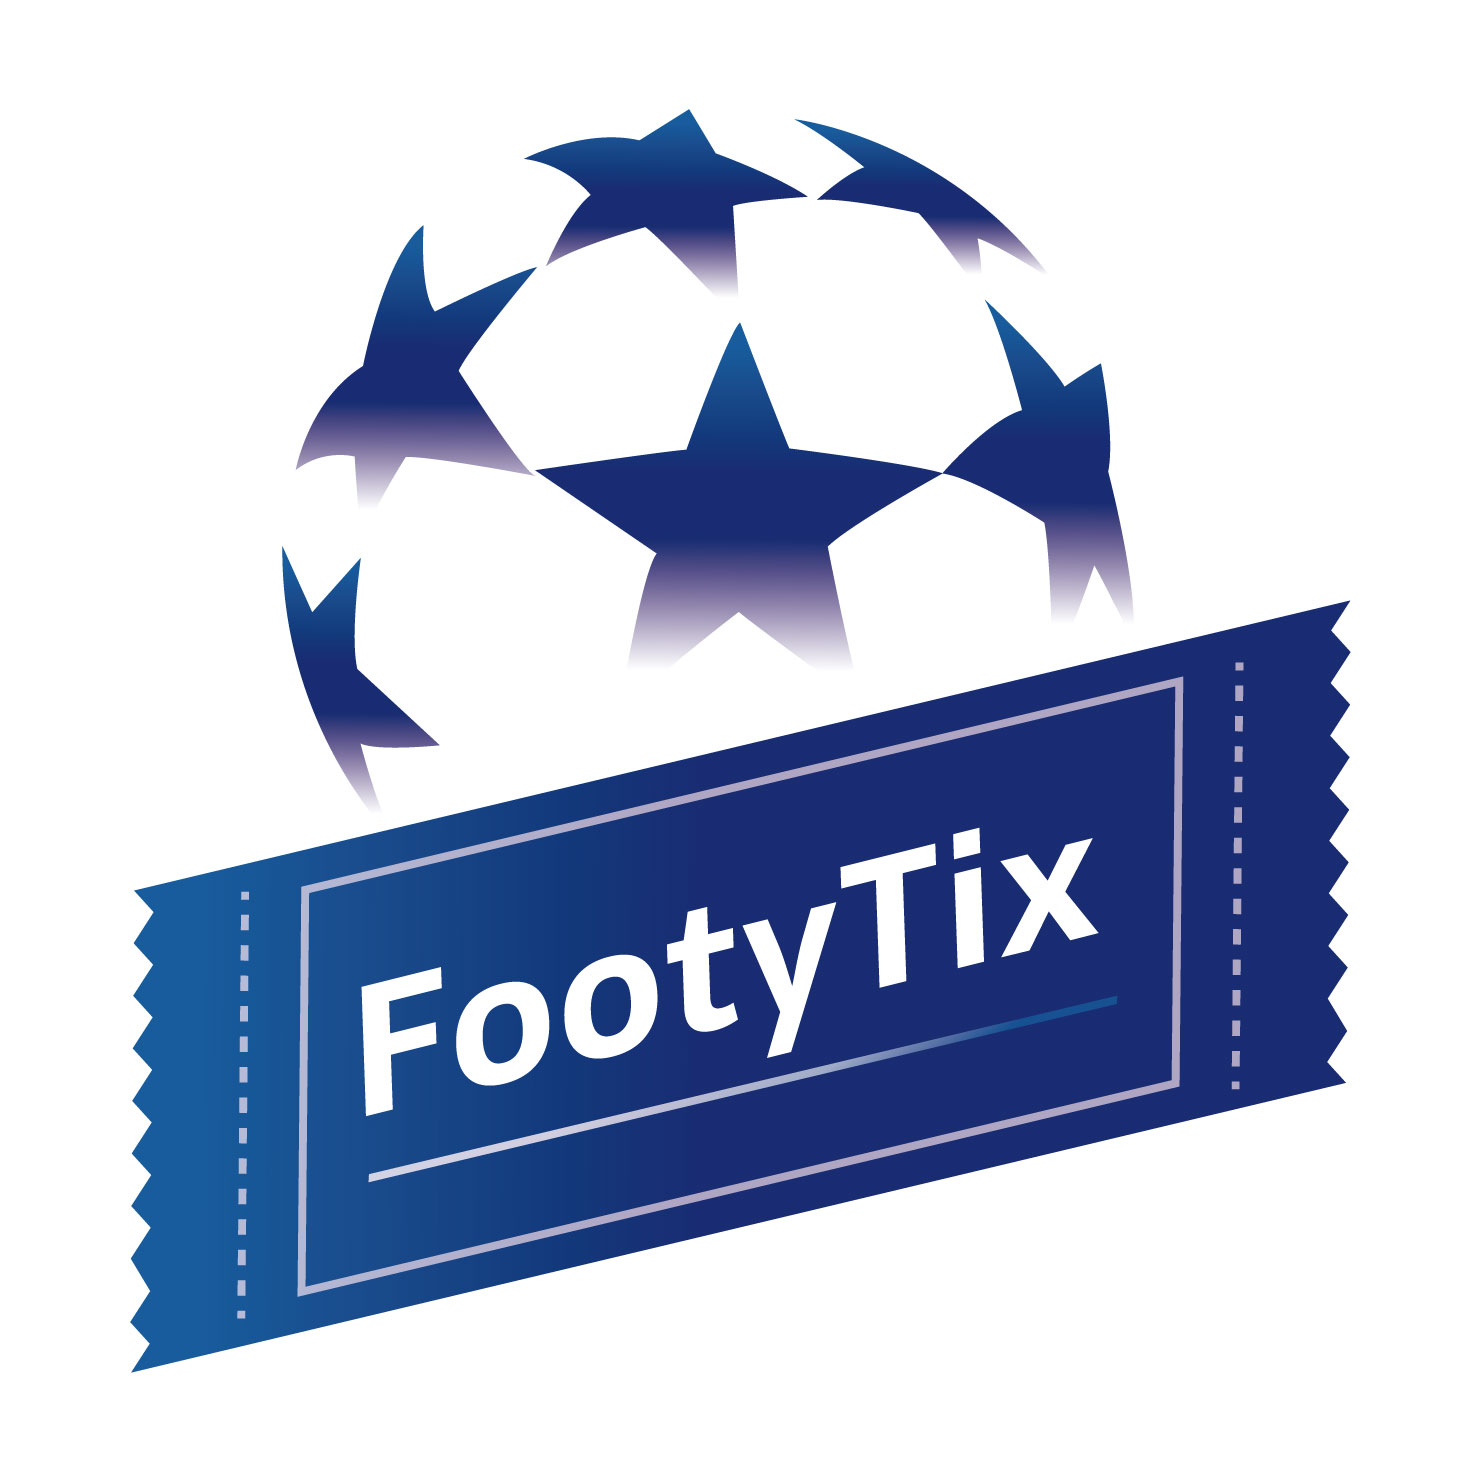 チャンピオンズリーグ決勝が観られるのはdaznだけ Daznに入るべき4つのタイミングとその理由 Footytix 海外サッカーチケット攻略ブログ